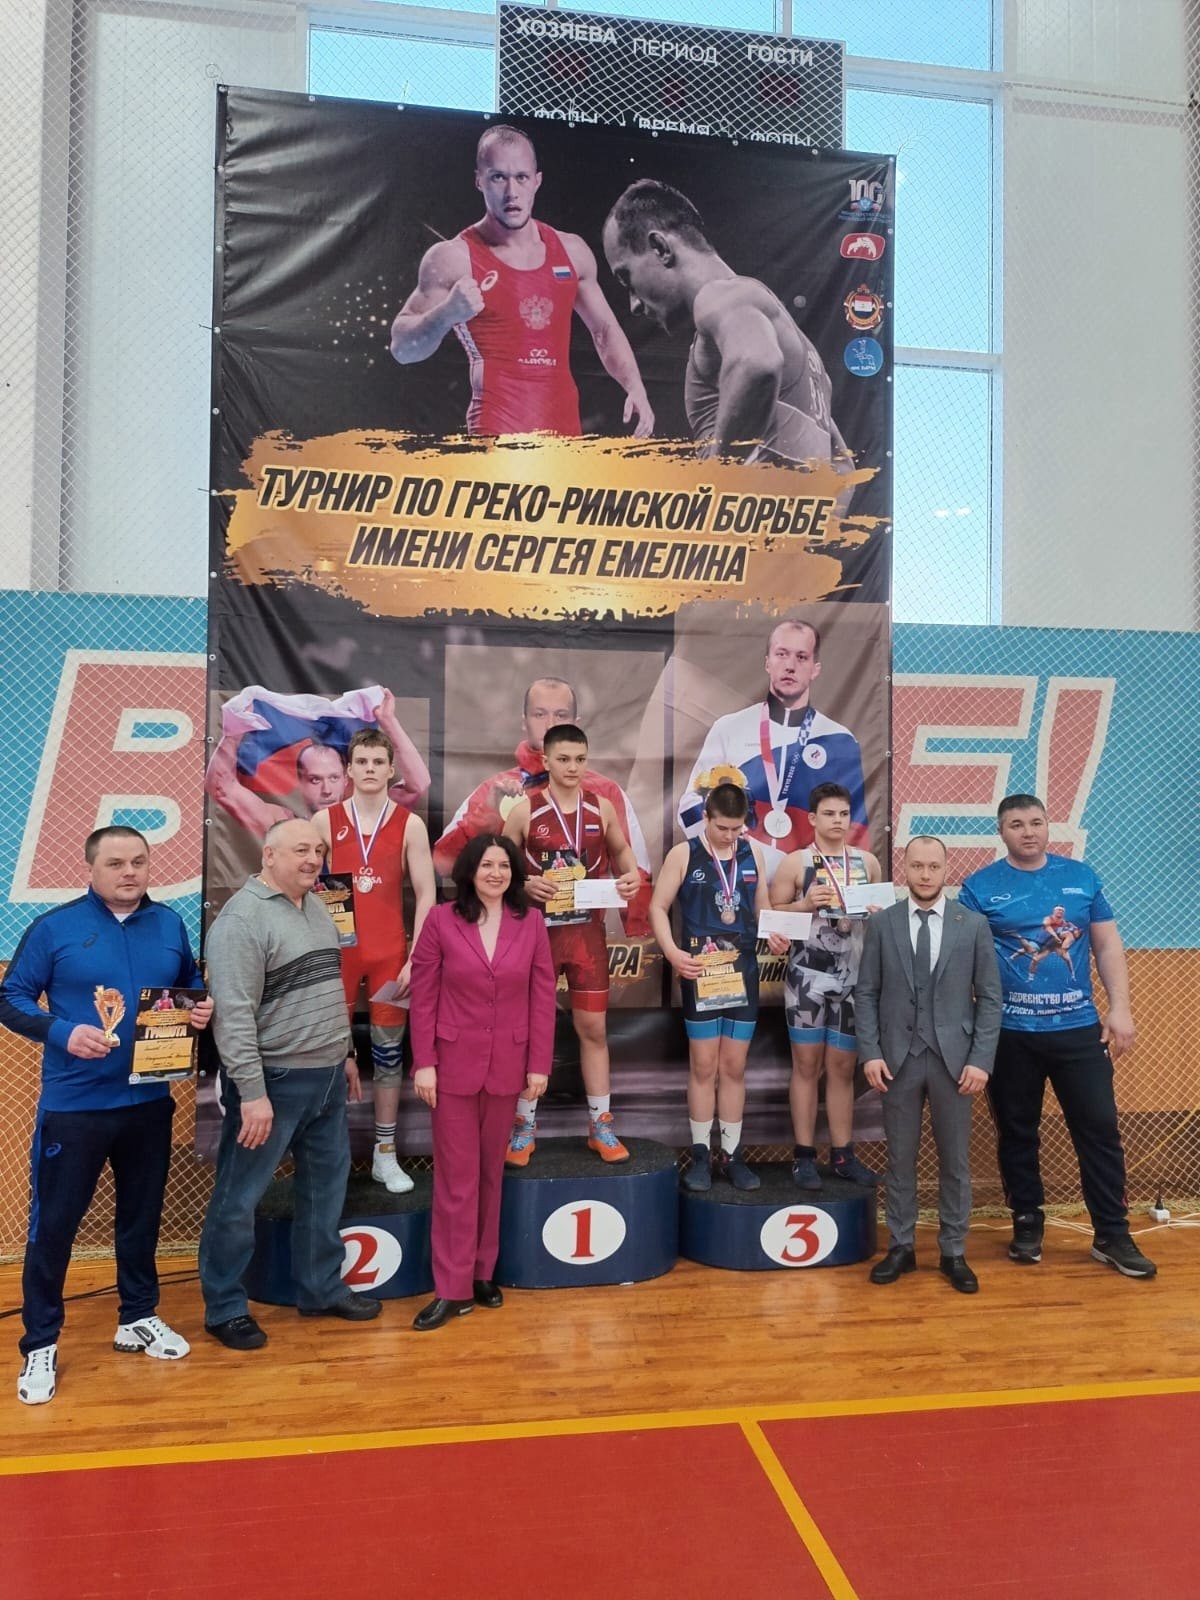 6 медалей завоевали кузнечане на турнире по греко-римской борьбе!